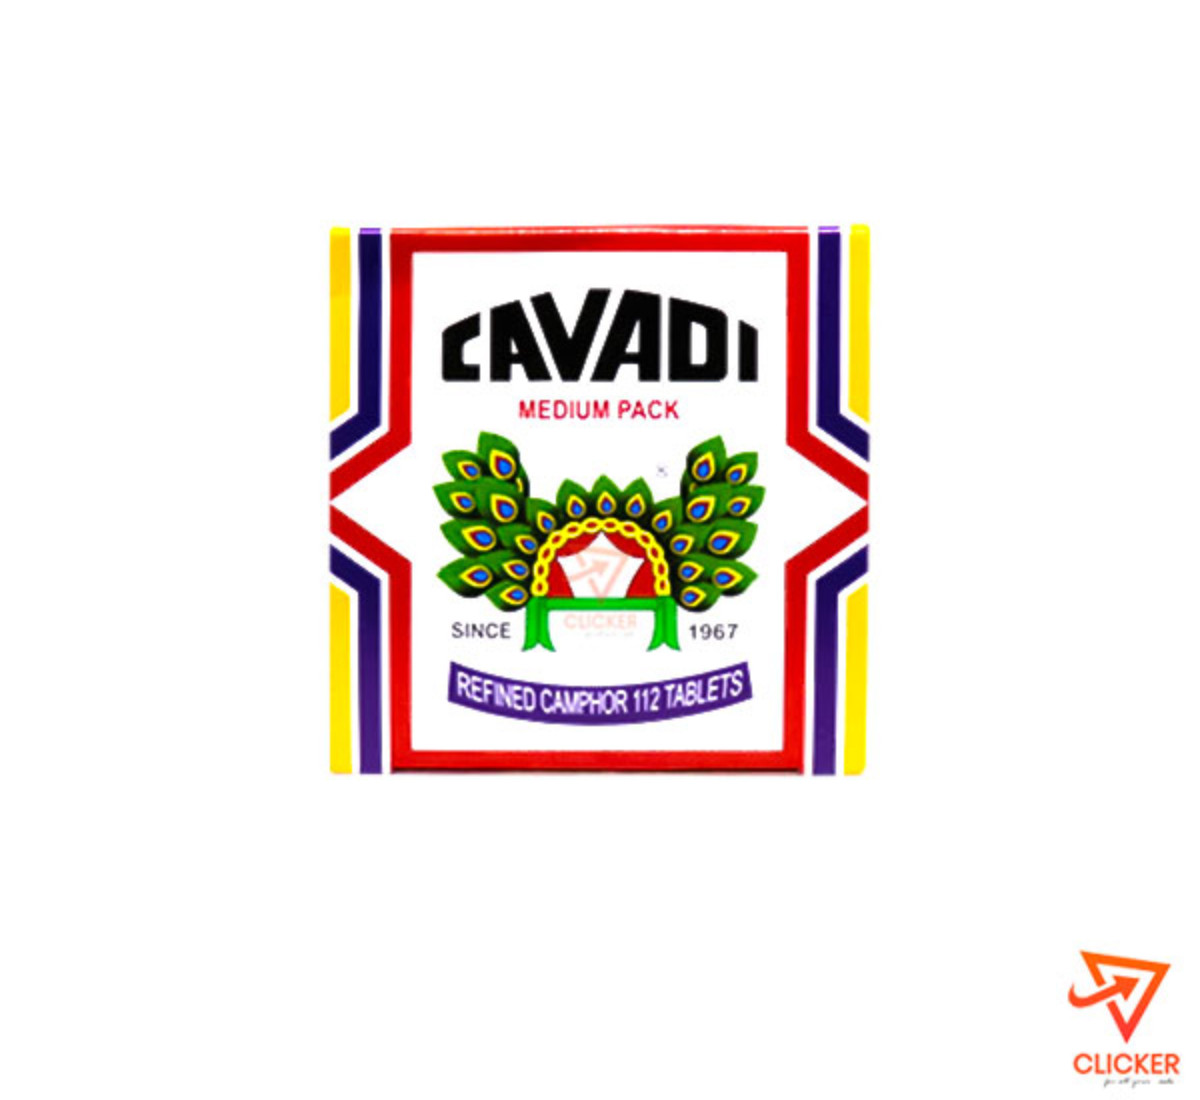 Clicker product CAVADI medium pack 854